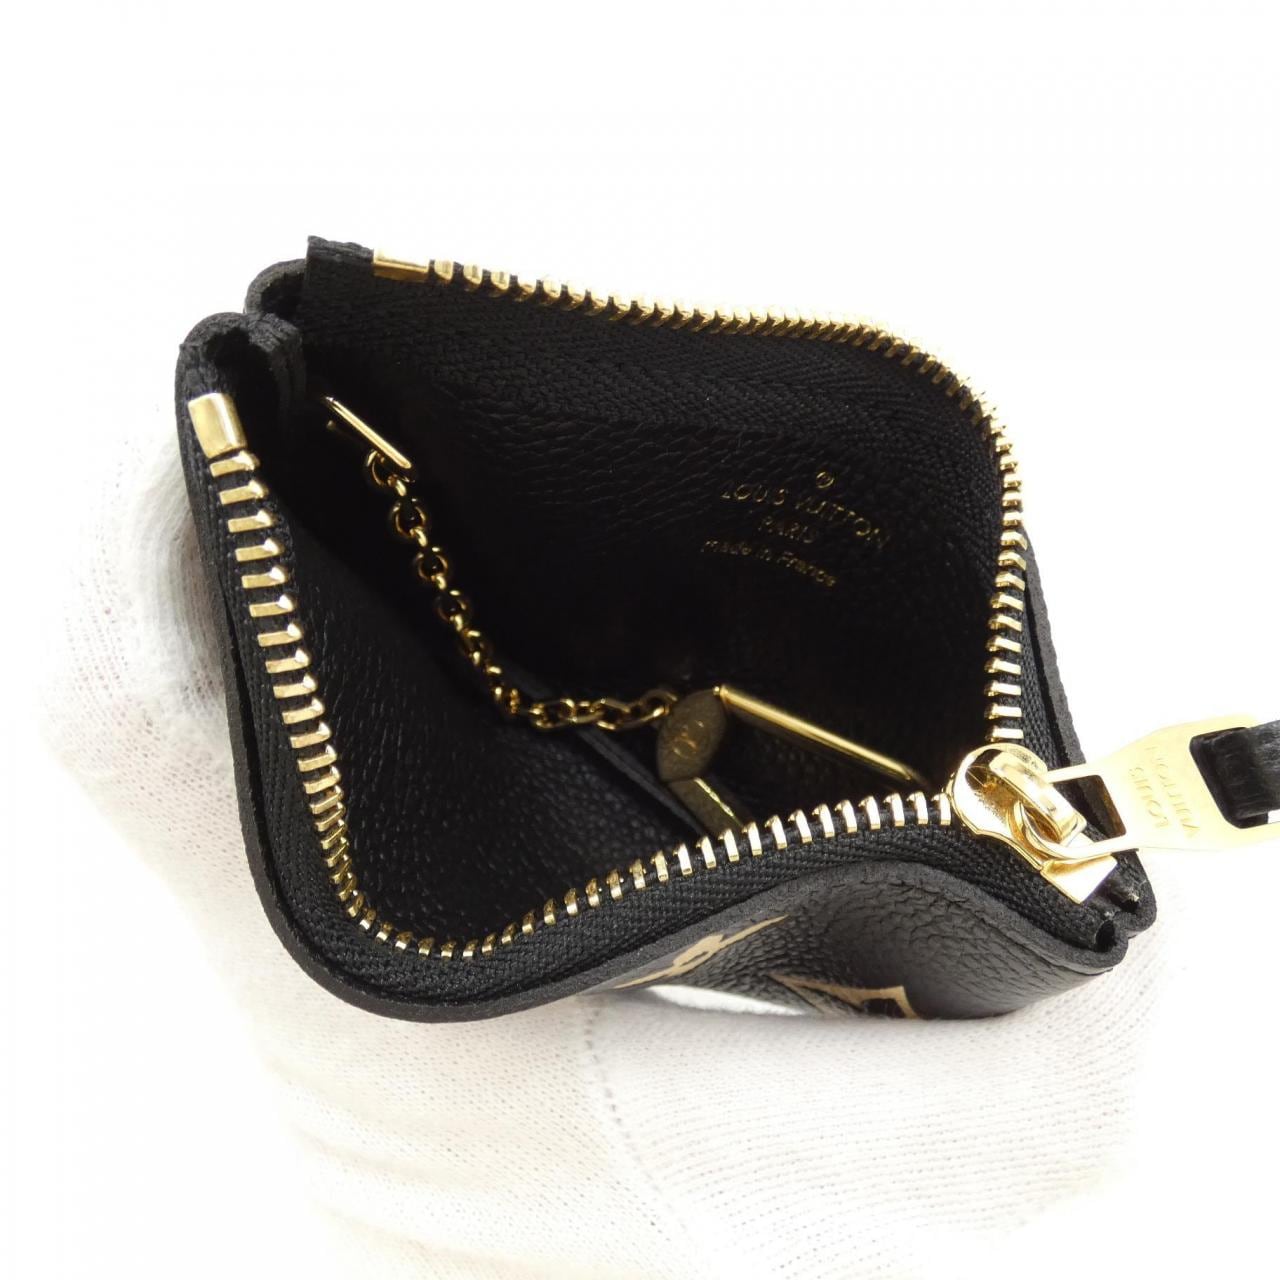 Louis Vuitton Key pouch (M80885)